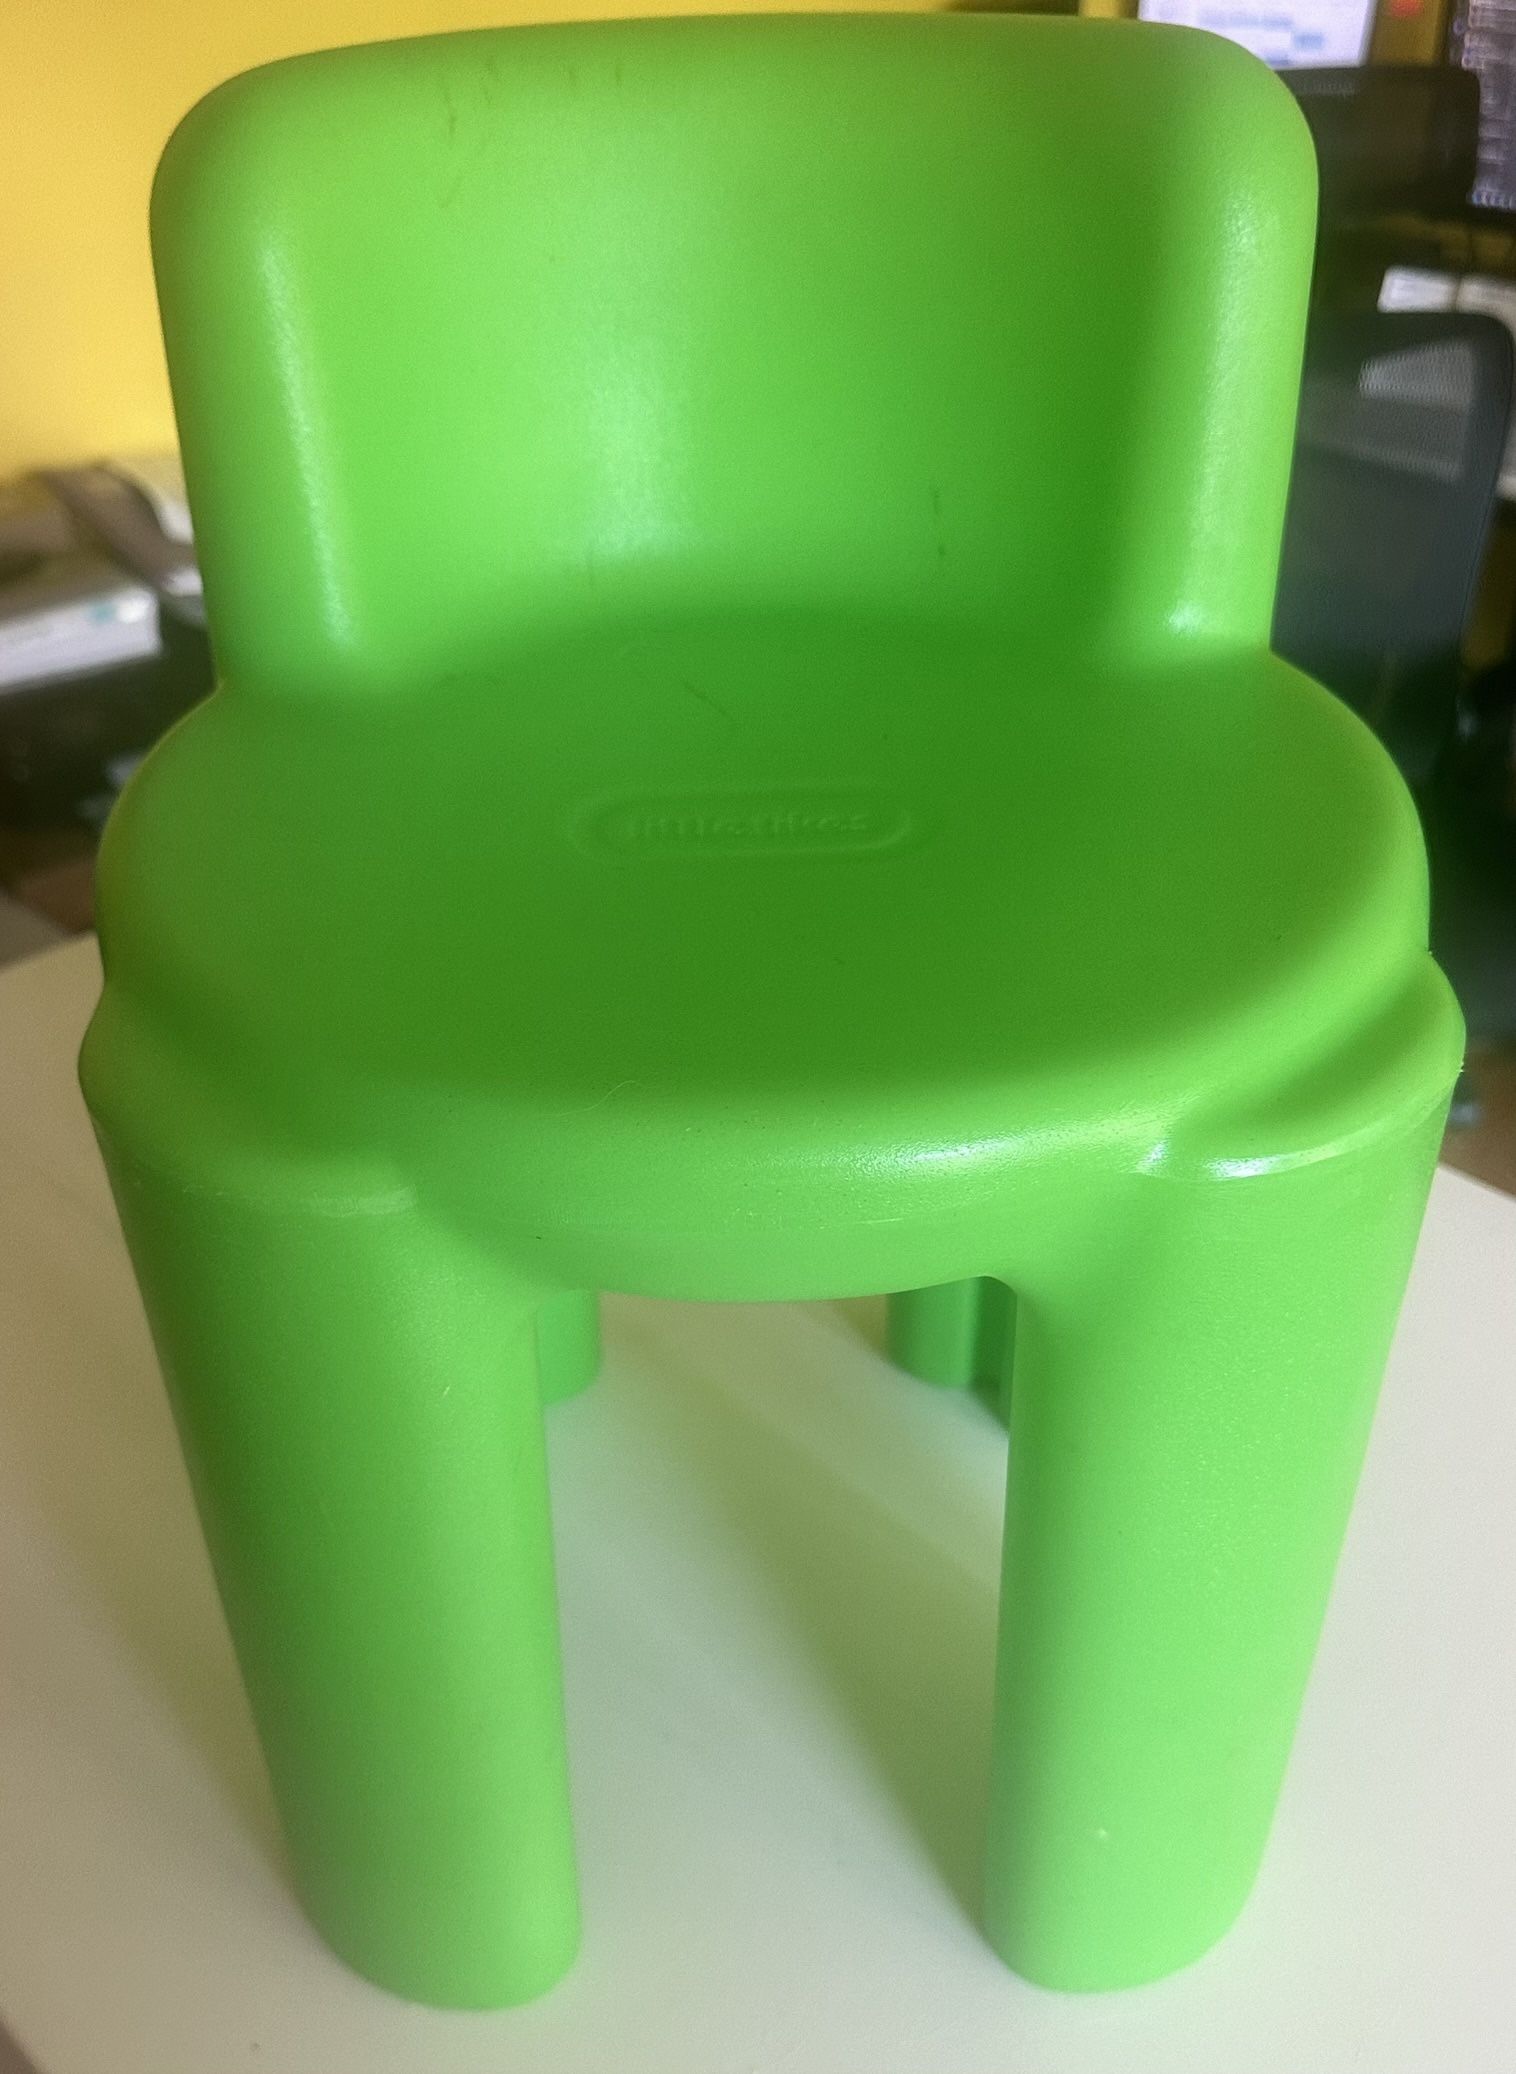 Green Little Tikes Chair